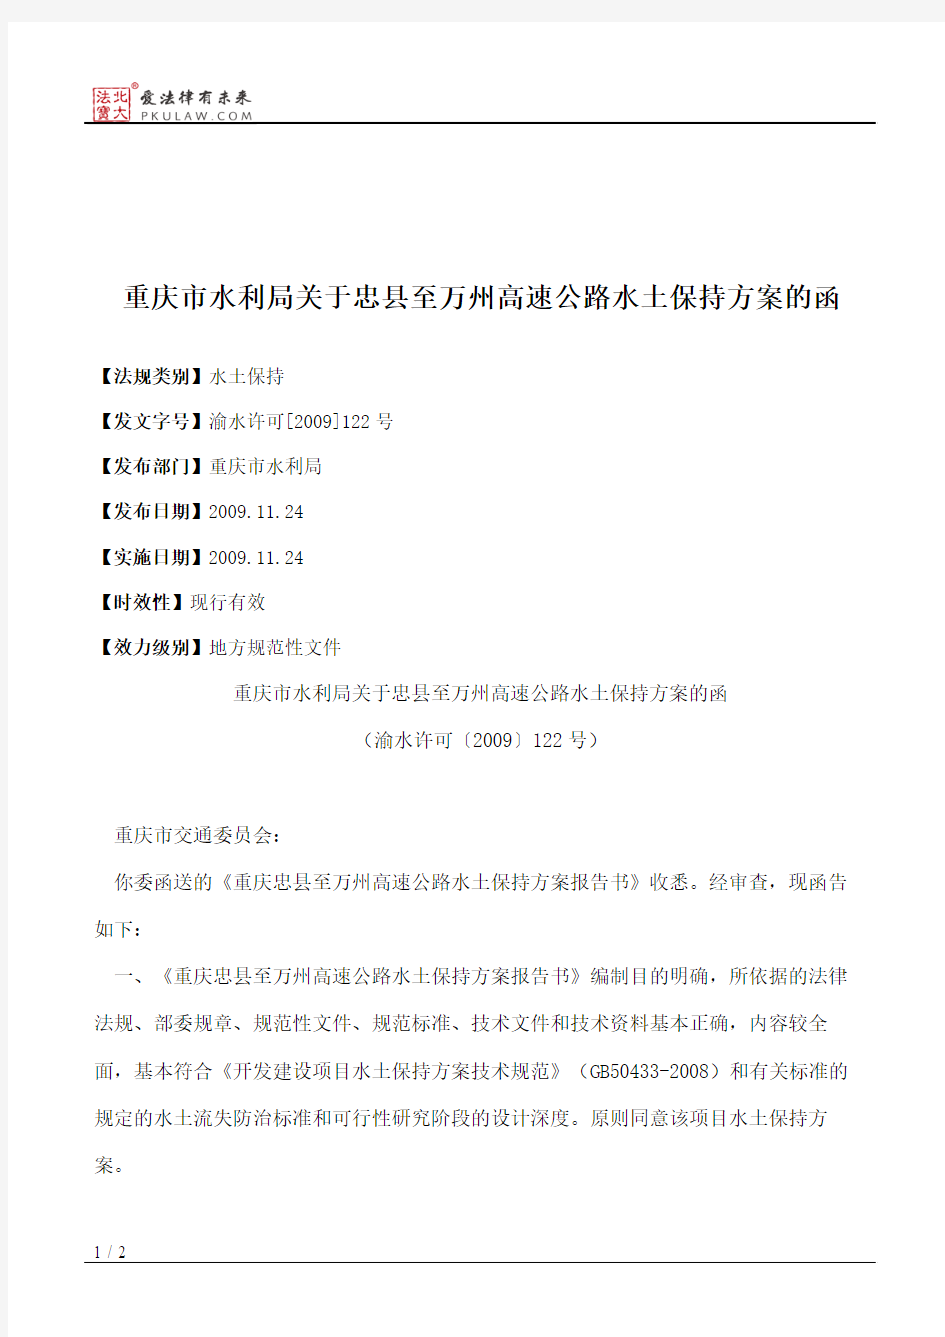 重庆市水利局关于忠县至万州高速公路水土保持方案的函